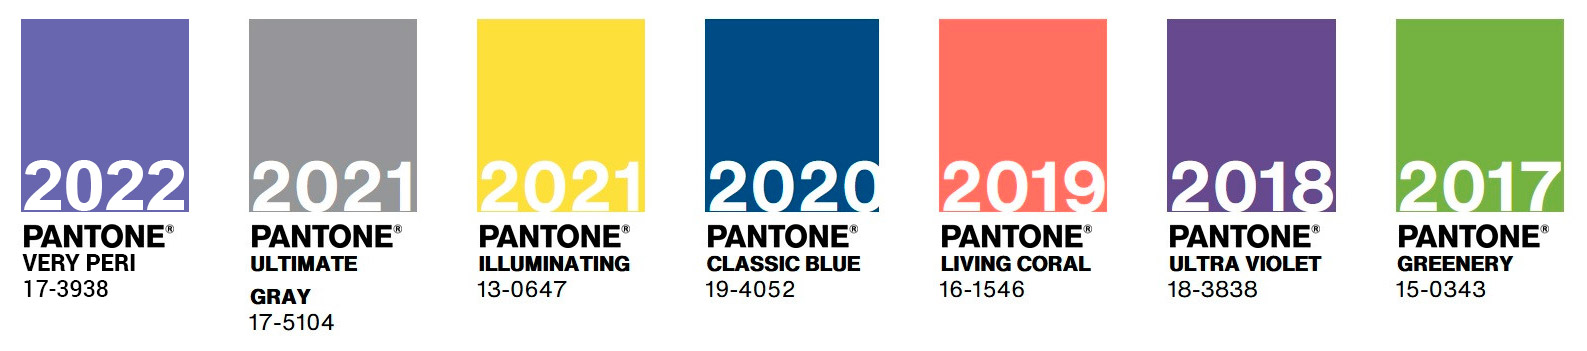 Палитра цветов 2017 - 2022 года от Pantone